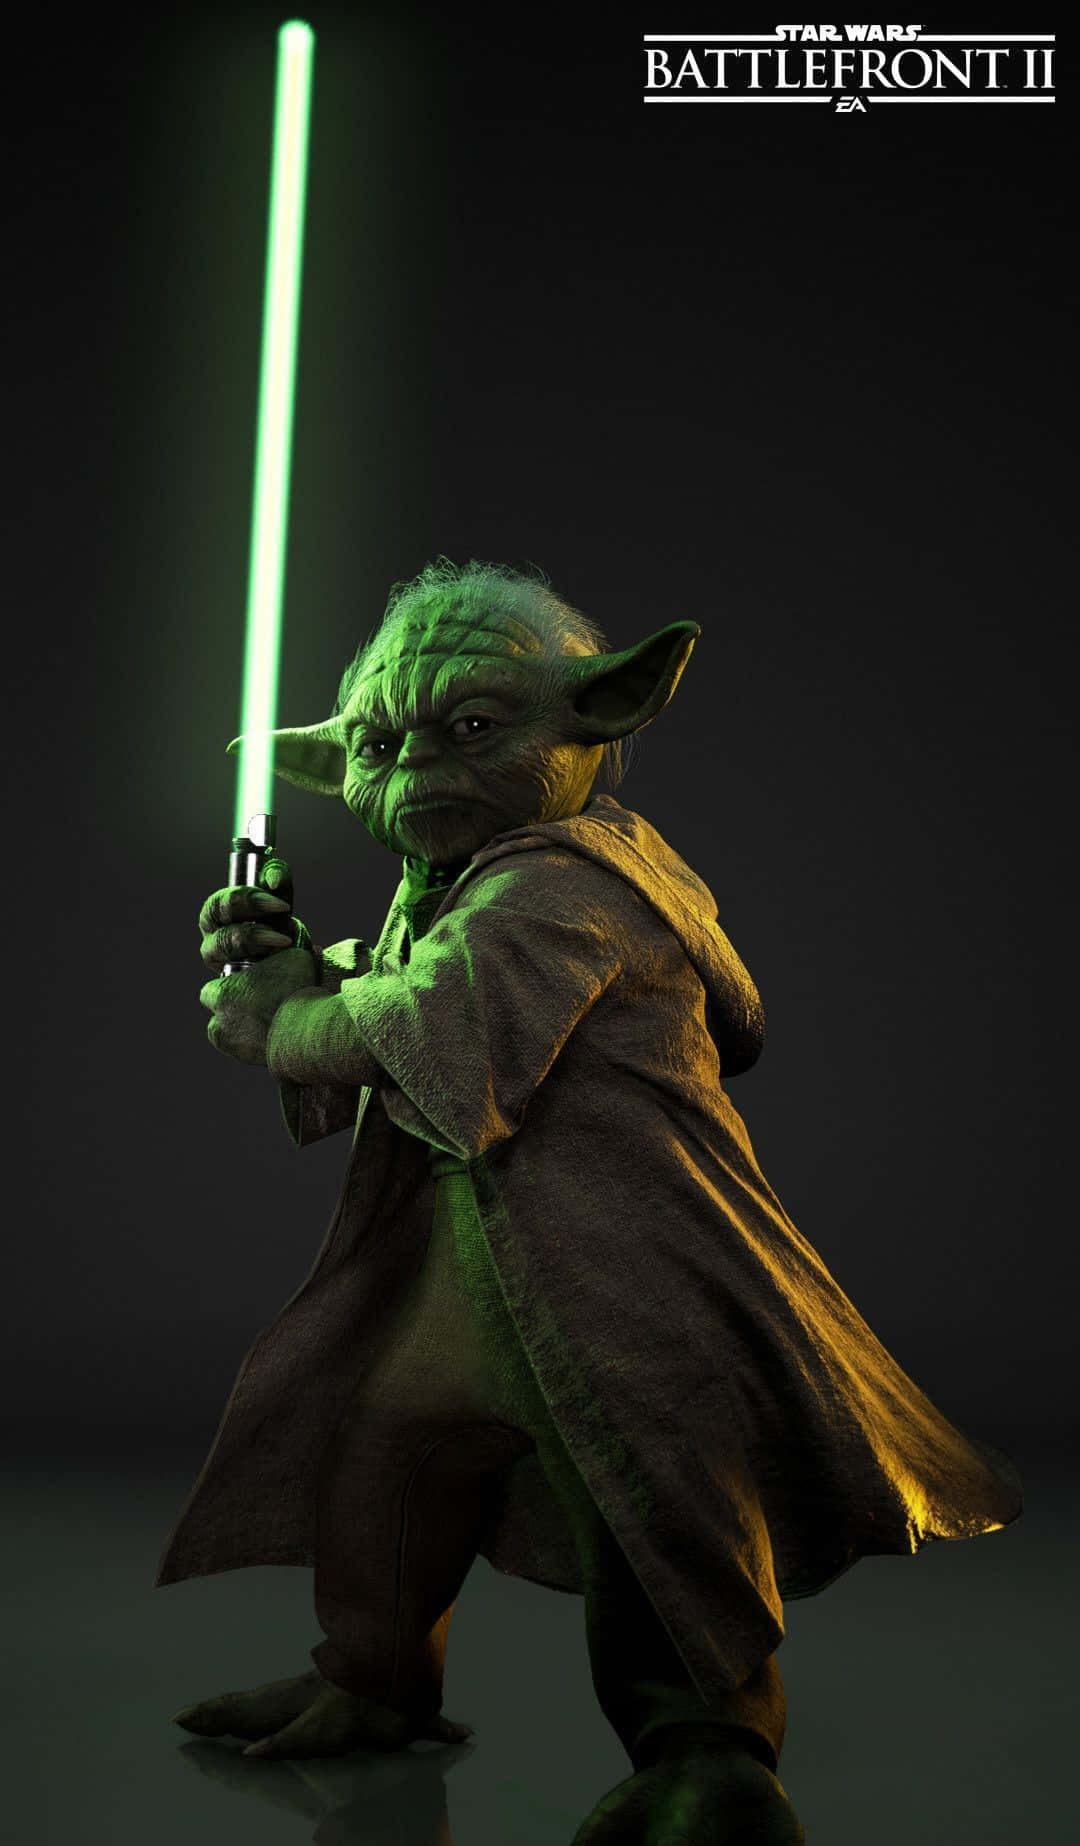 Believe in yourself, just like Yoda